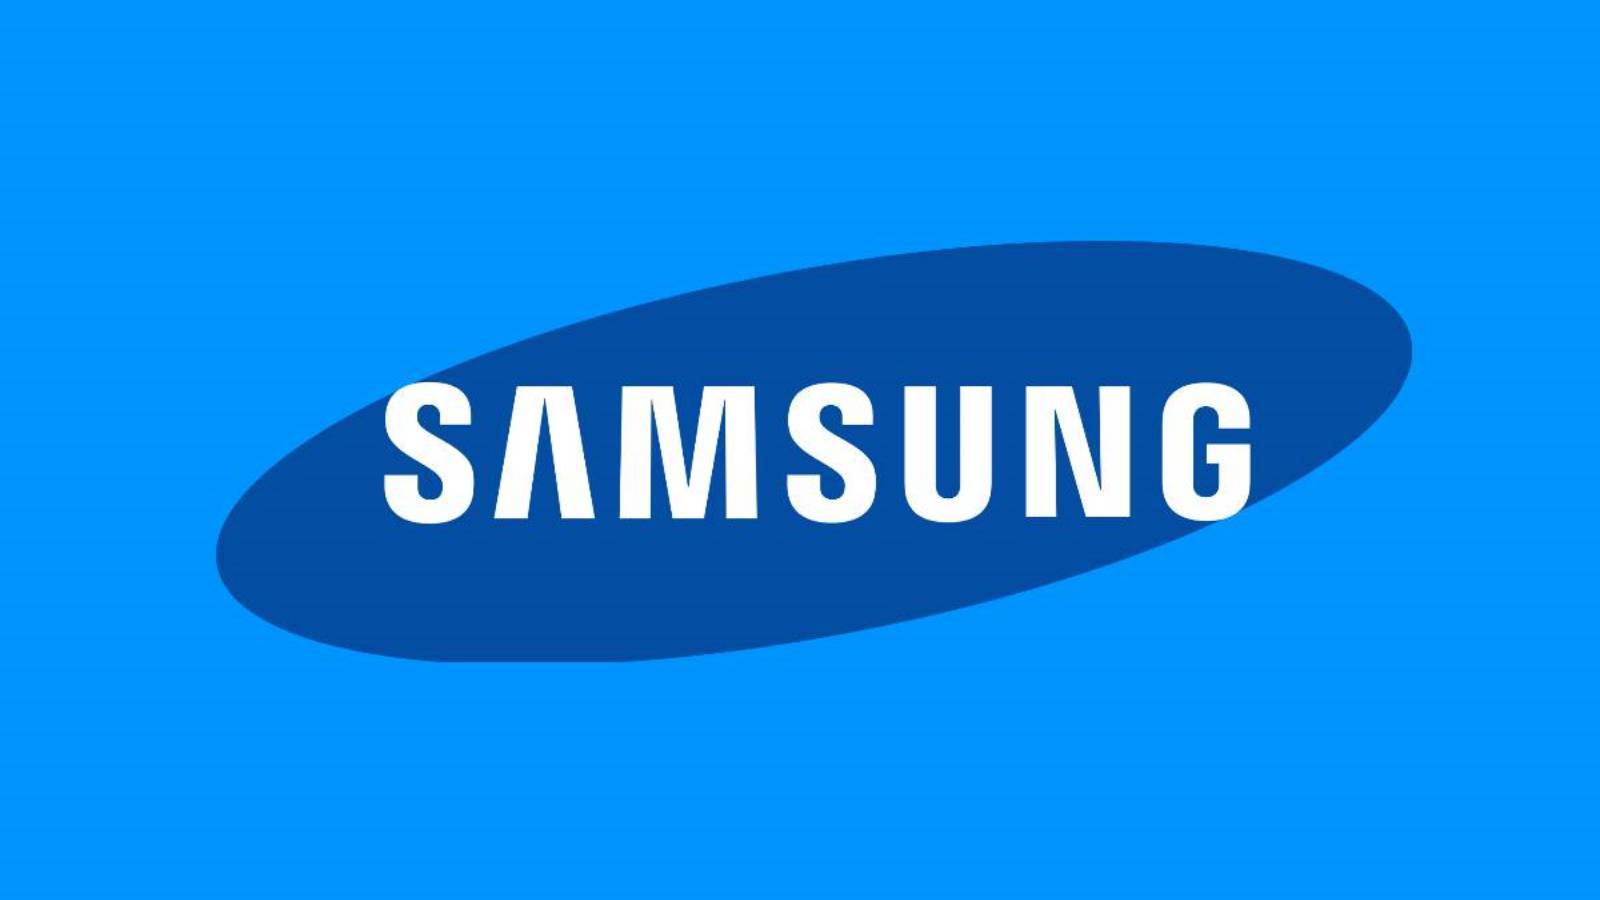 Samsung präsentiert die neuesten Innovationen für Klimaanlagen